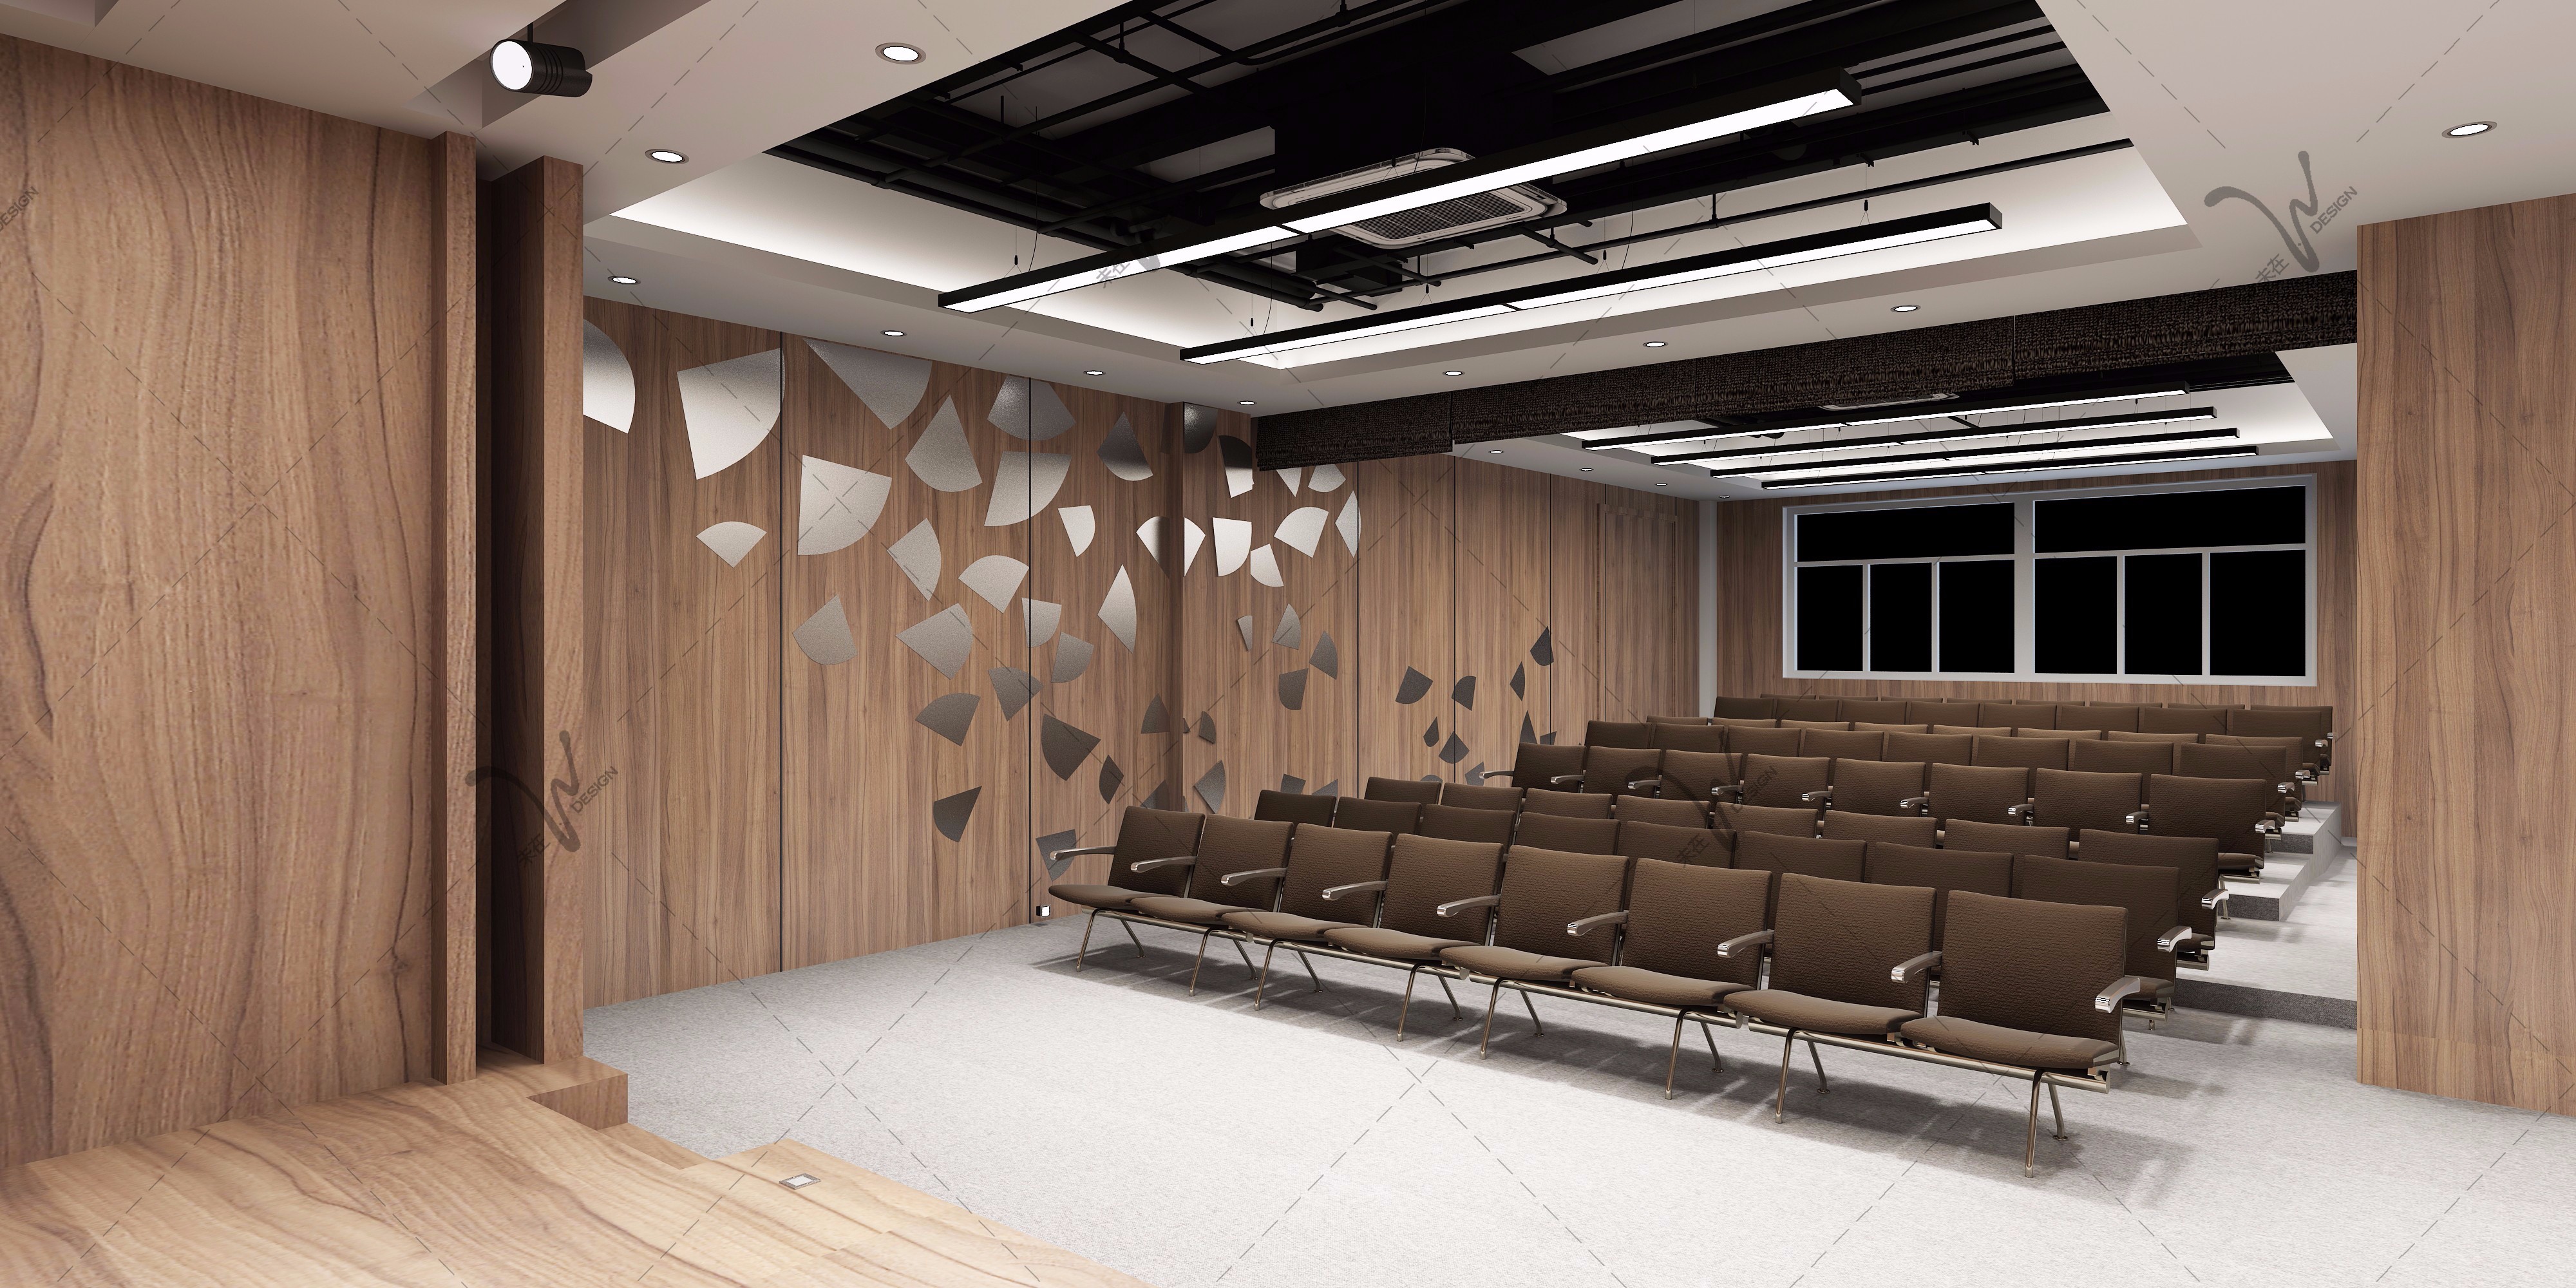 现代报告厅 - 效果图交流区-建E室内设计网